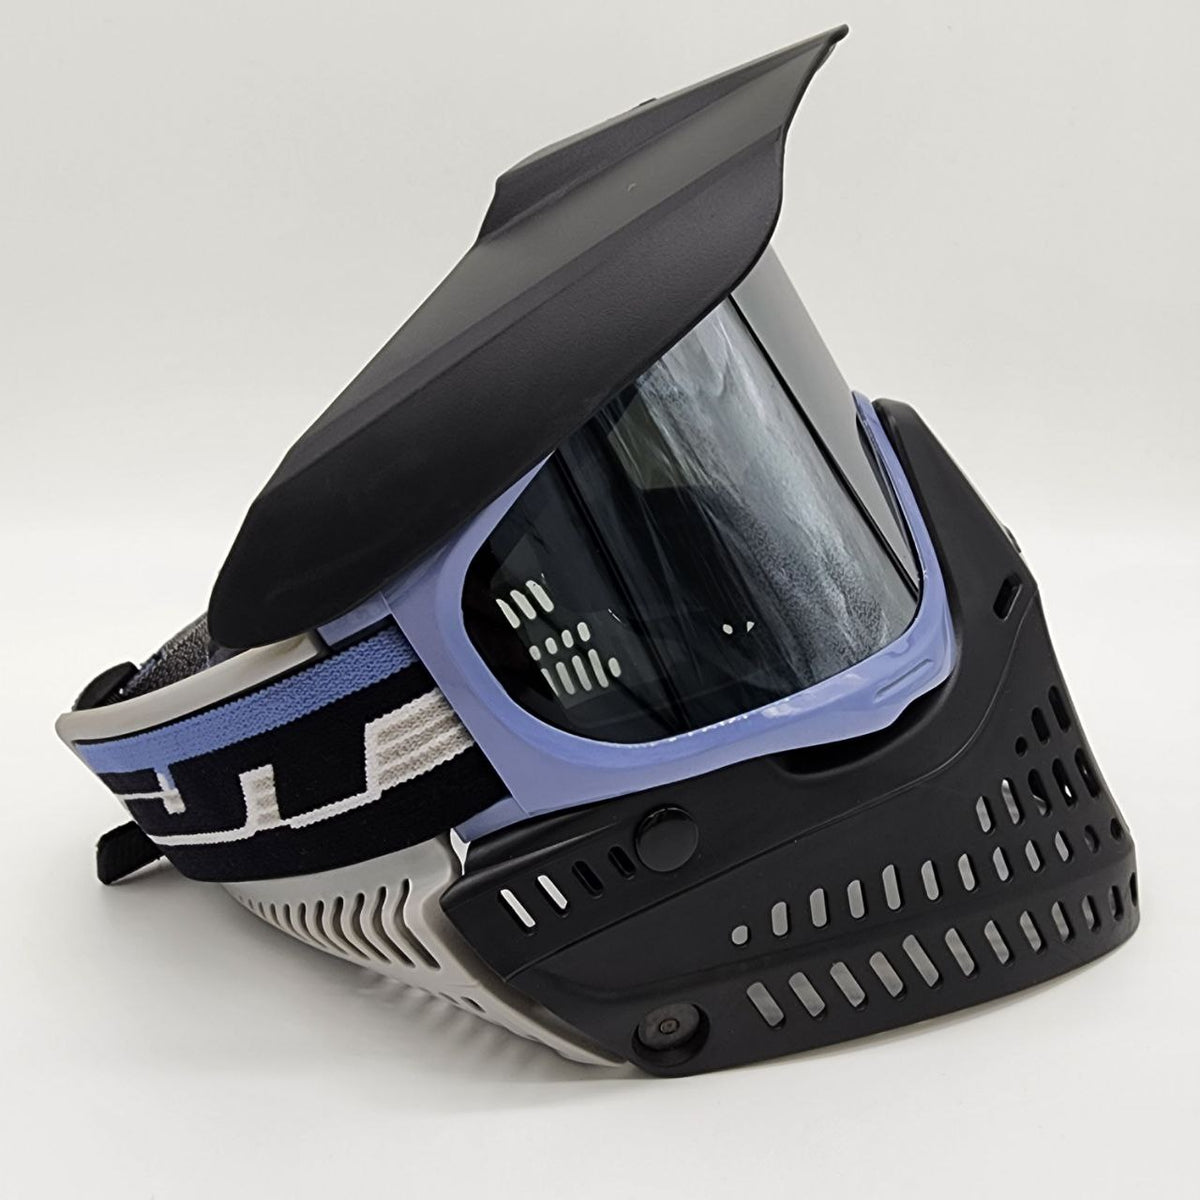 New JT Cobalt Proflex  Paintball Mask - Goggle